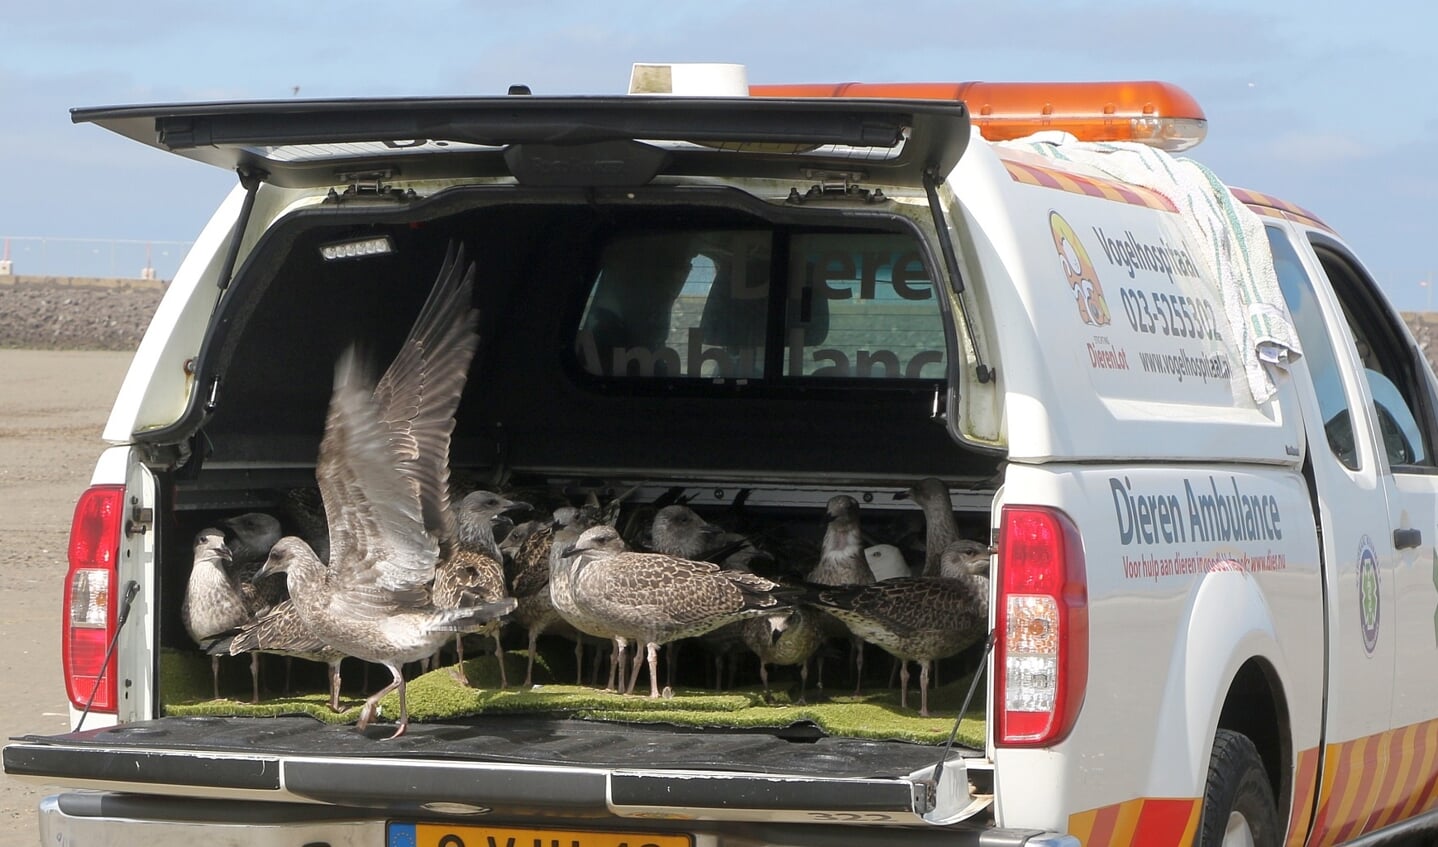 Dit spectaculaire en emotionele moment bij de zuidpier is één van de jaarlijkse hoogtepunten van het Vogelhospitaal en haar vrijwilligers.